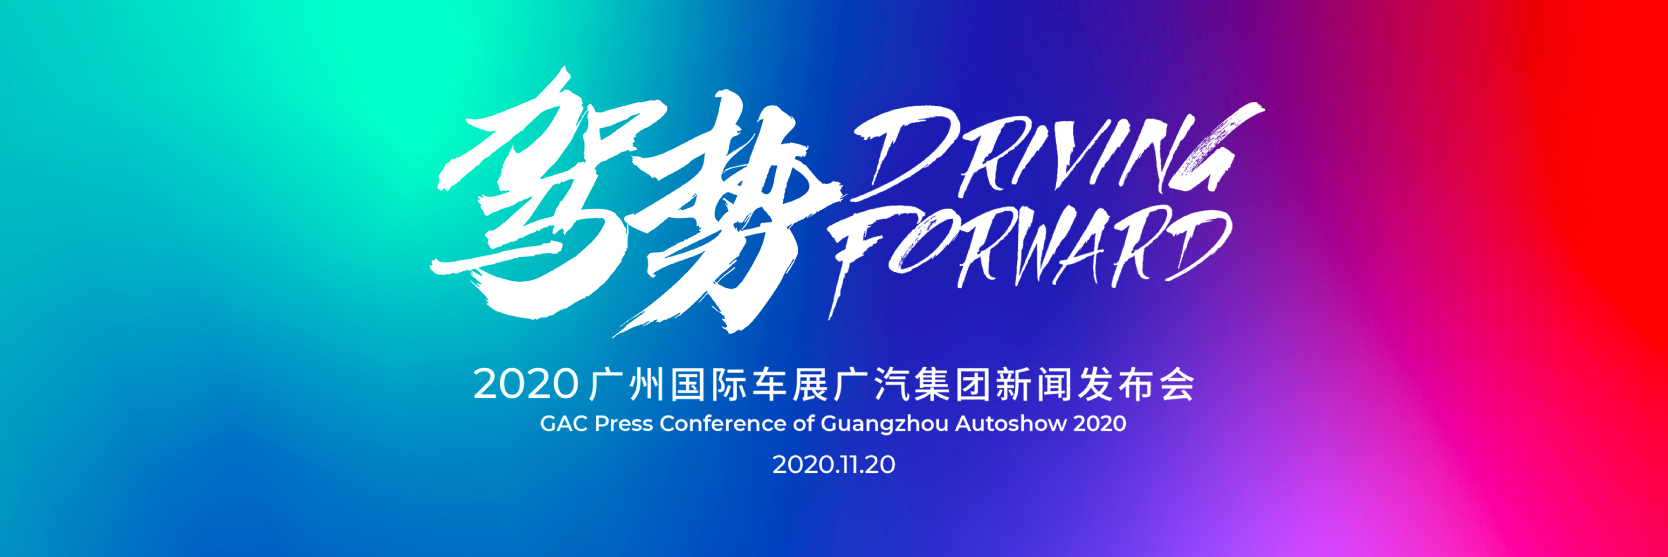 Guangzhou Auto Show 2020